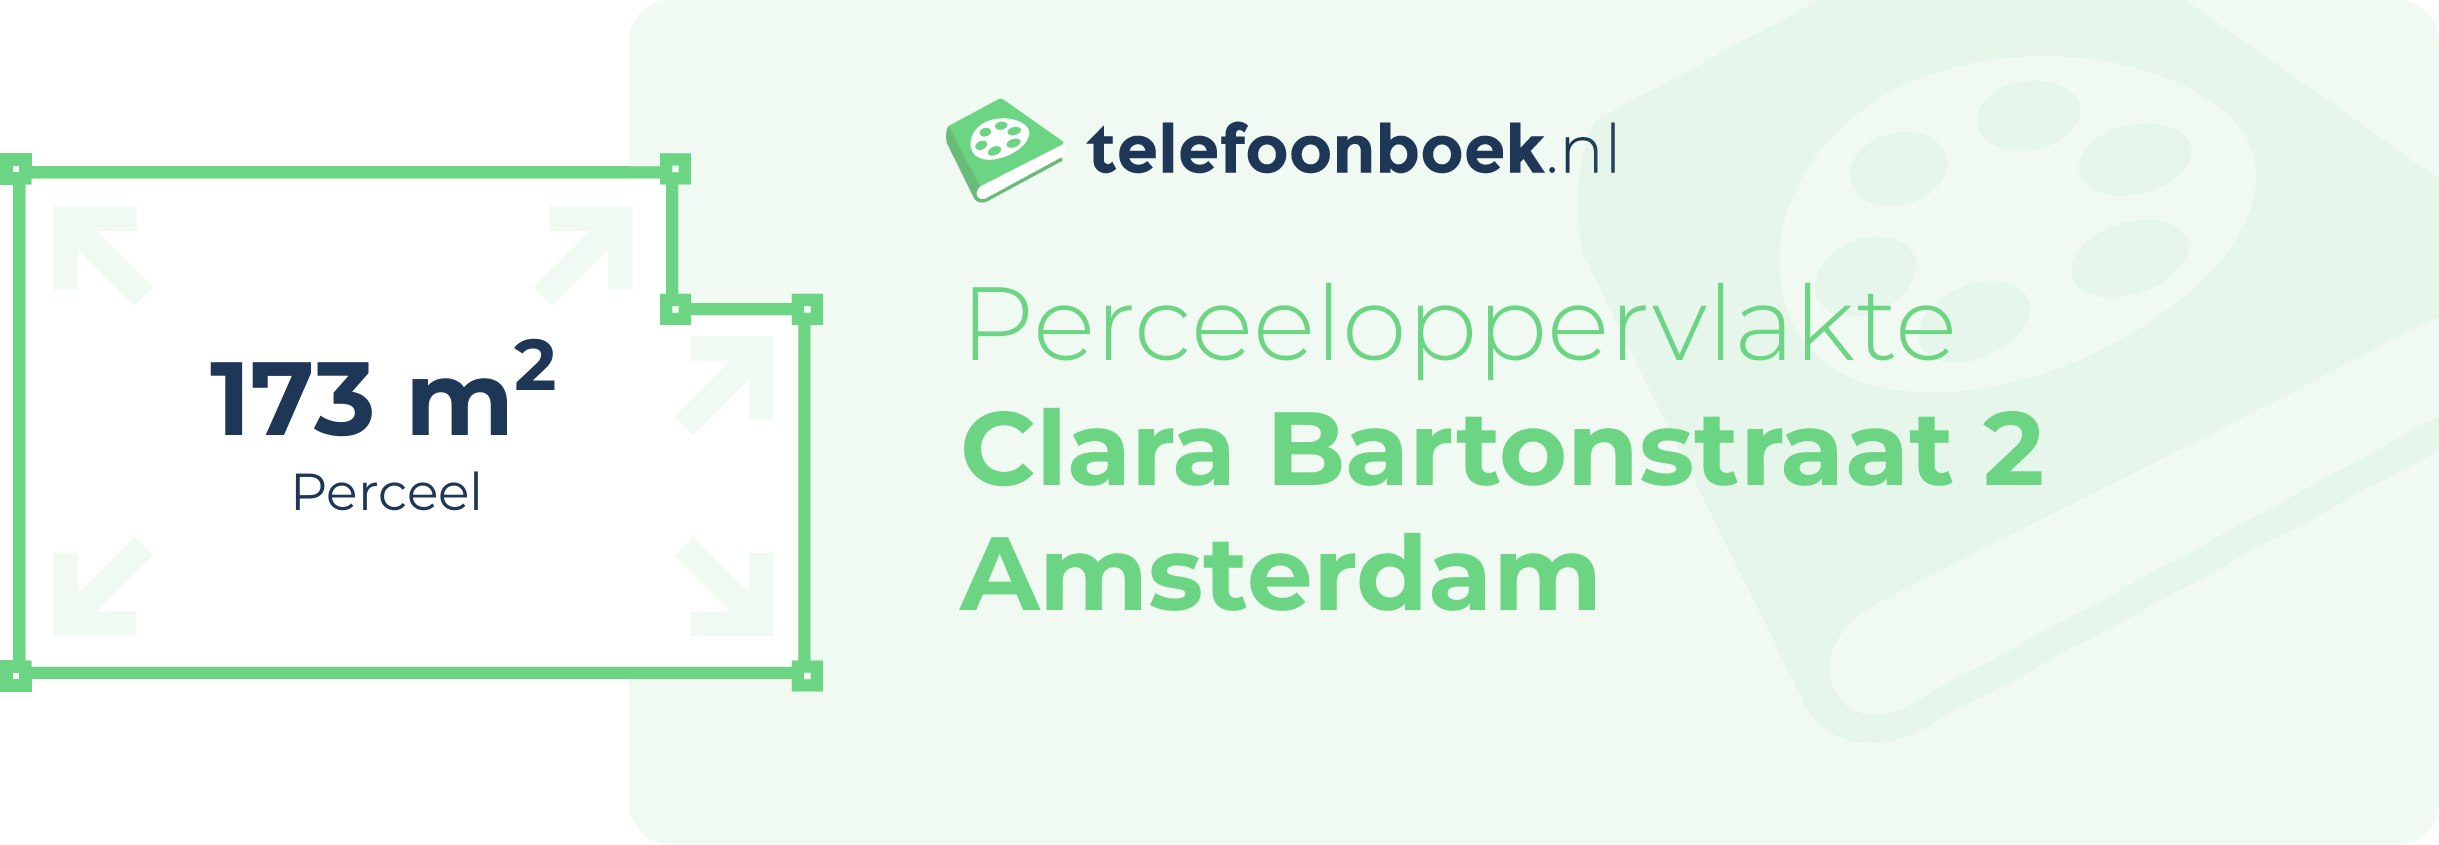 Perceeloppervlakte Clara Bartonstraat 2 Amsterdam